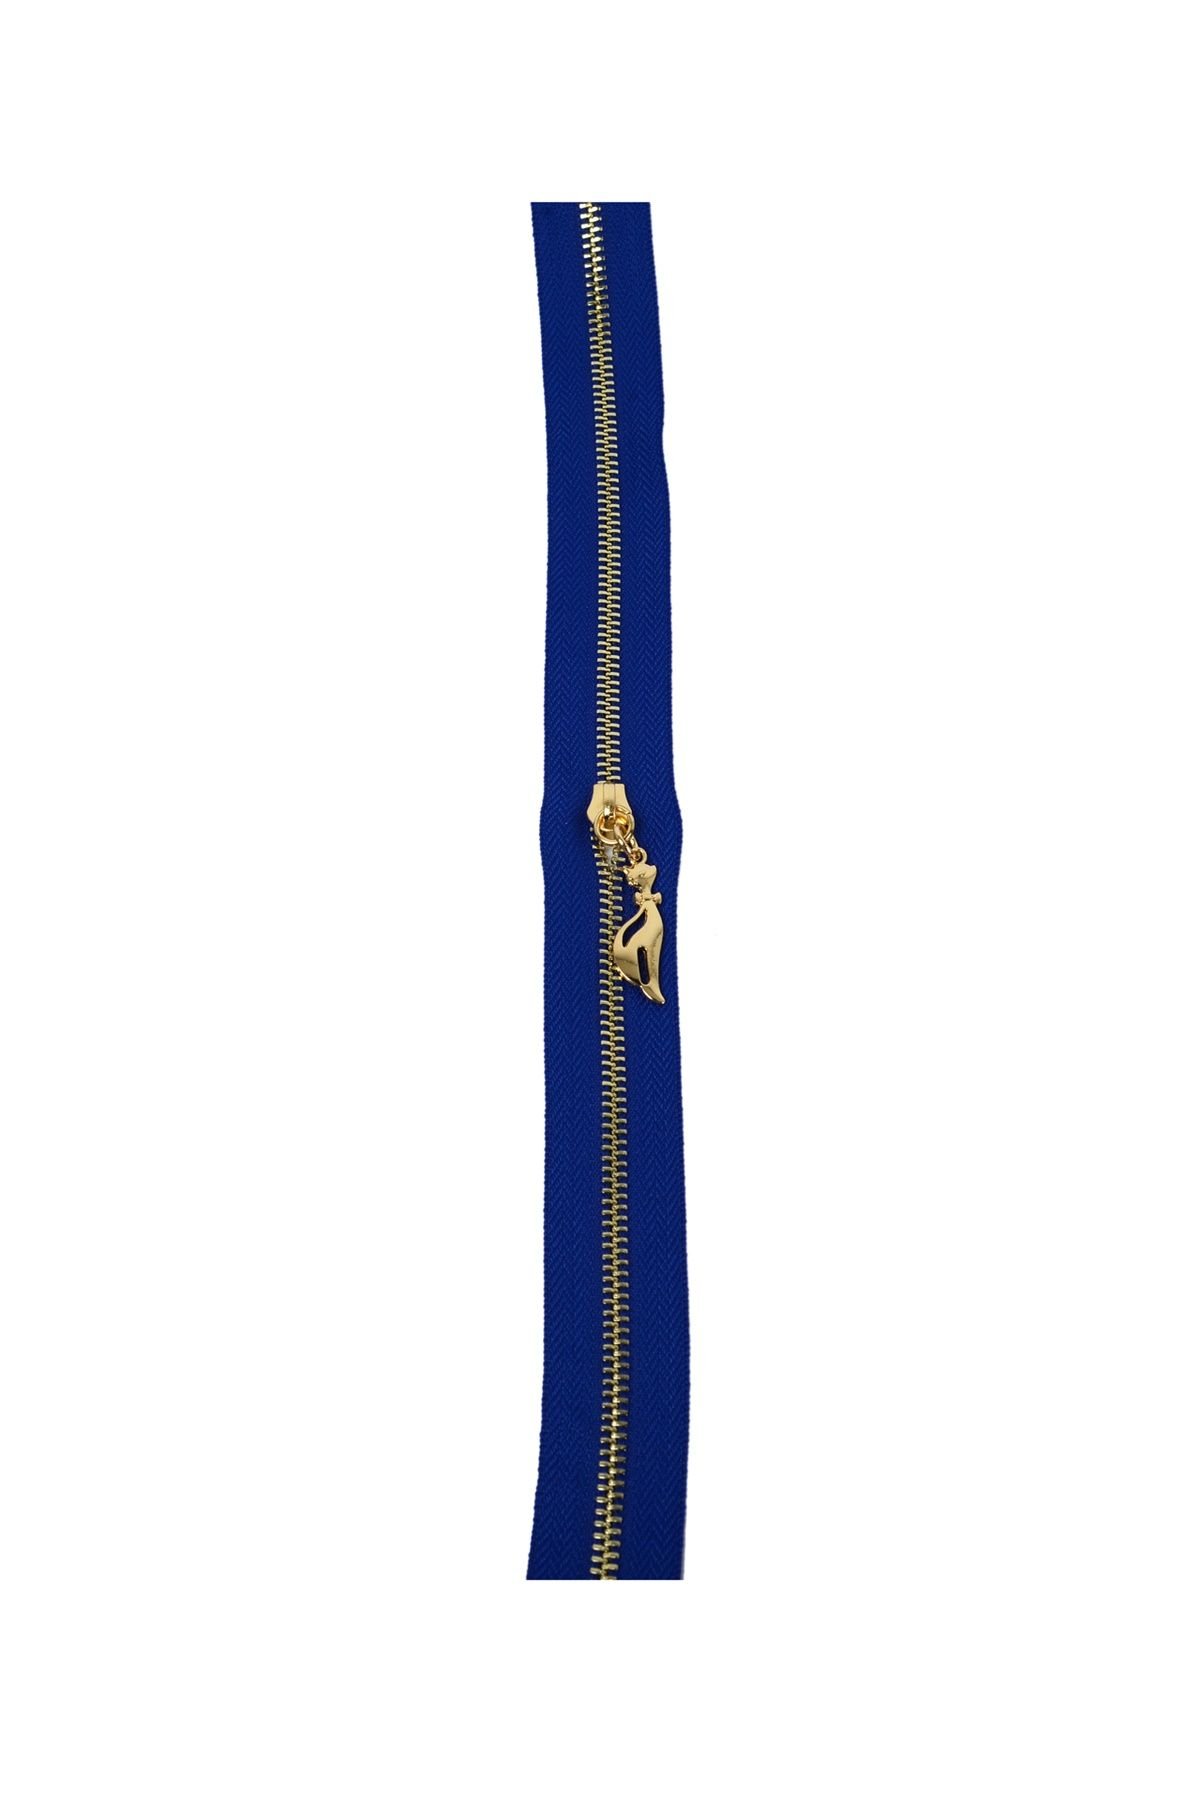 Nildenhobim  Çanta Fermuarı - Altın Dişli - Uzunluk 50 Cm - Genişlik 3.5 Cm - Mavi Renk